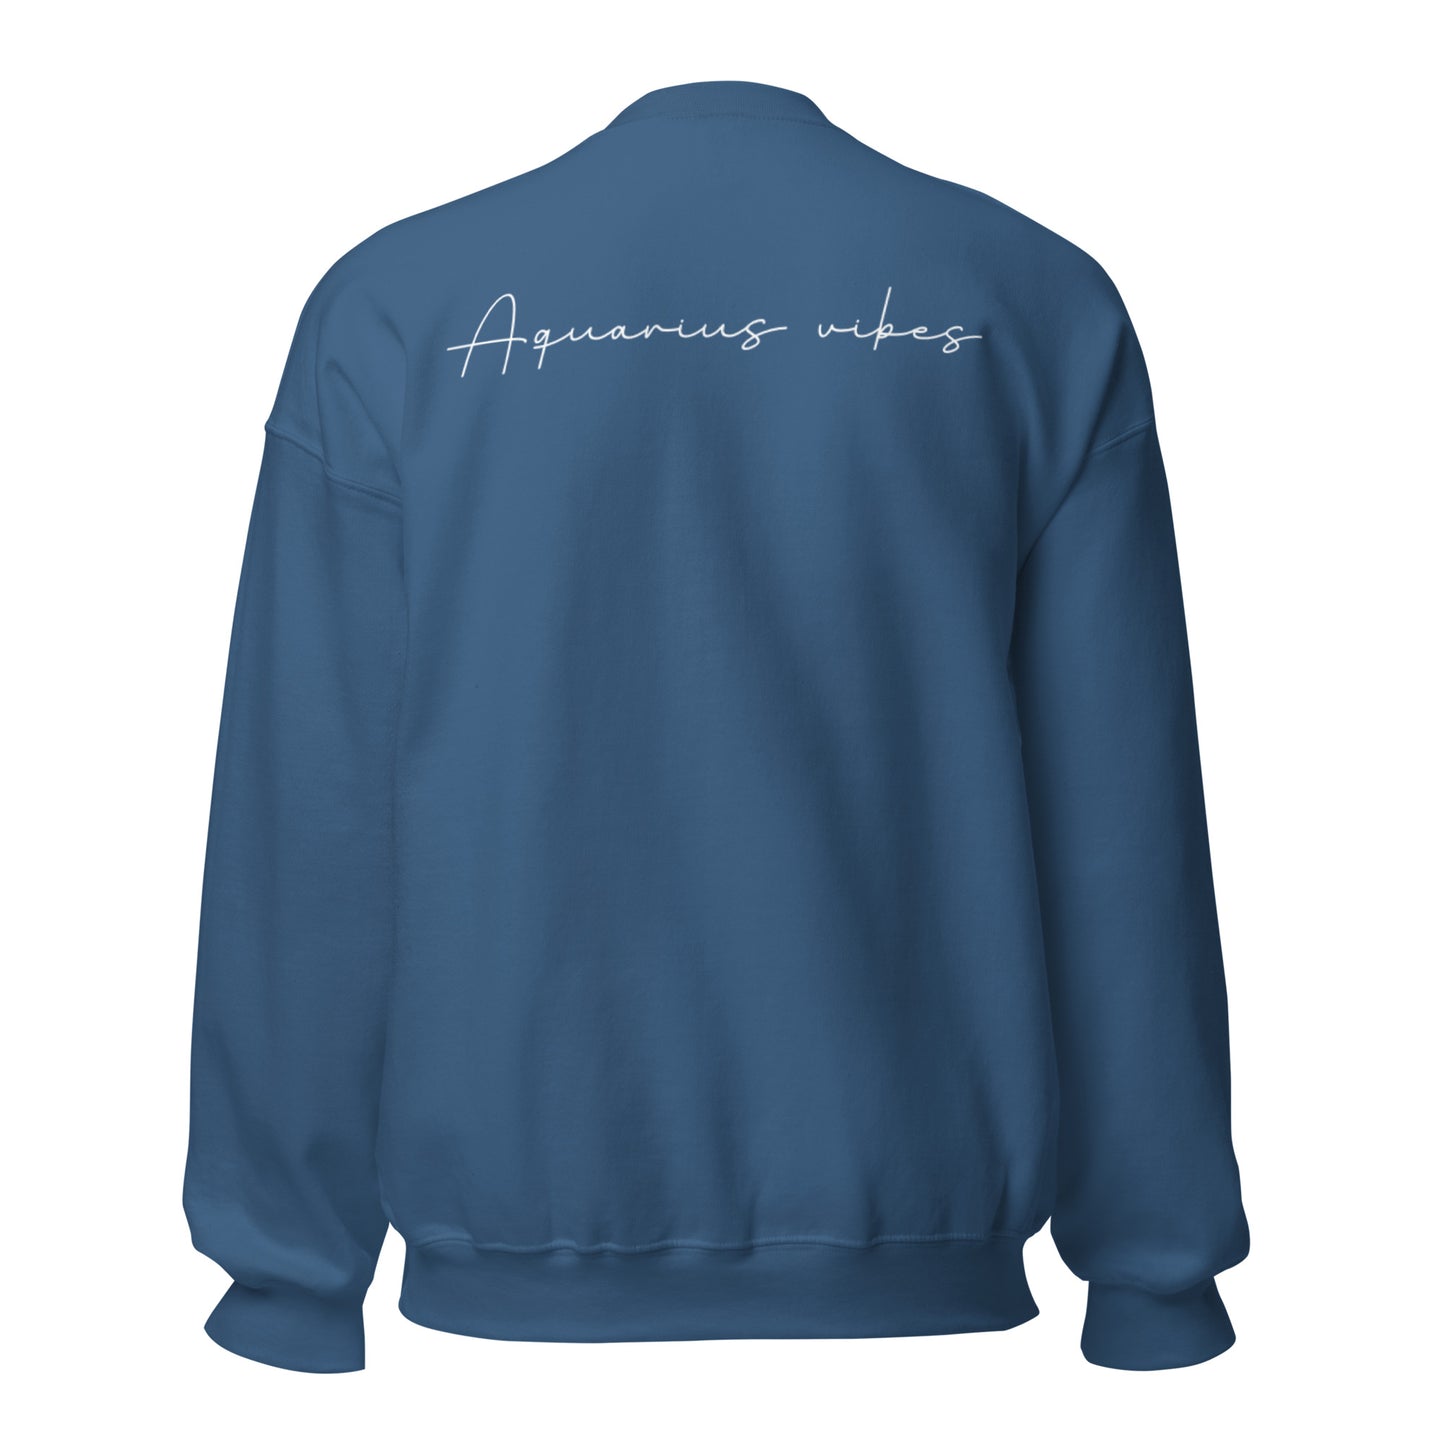 Aquarius Vibes Unisex Sweatshirt